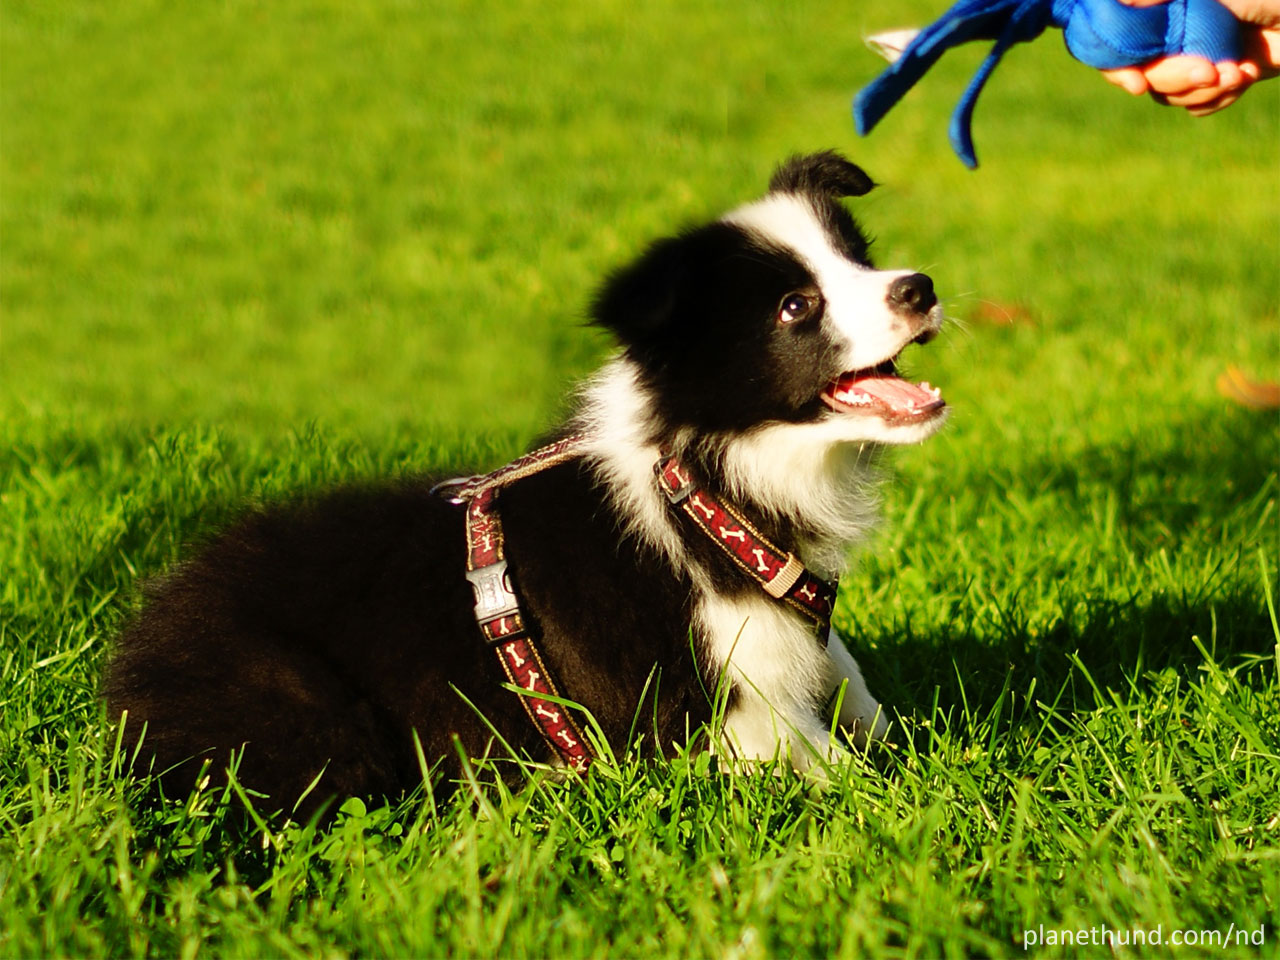 Hundezusammenführung - mit diesen Tipps klappt es!| Haustiermagazin